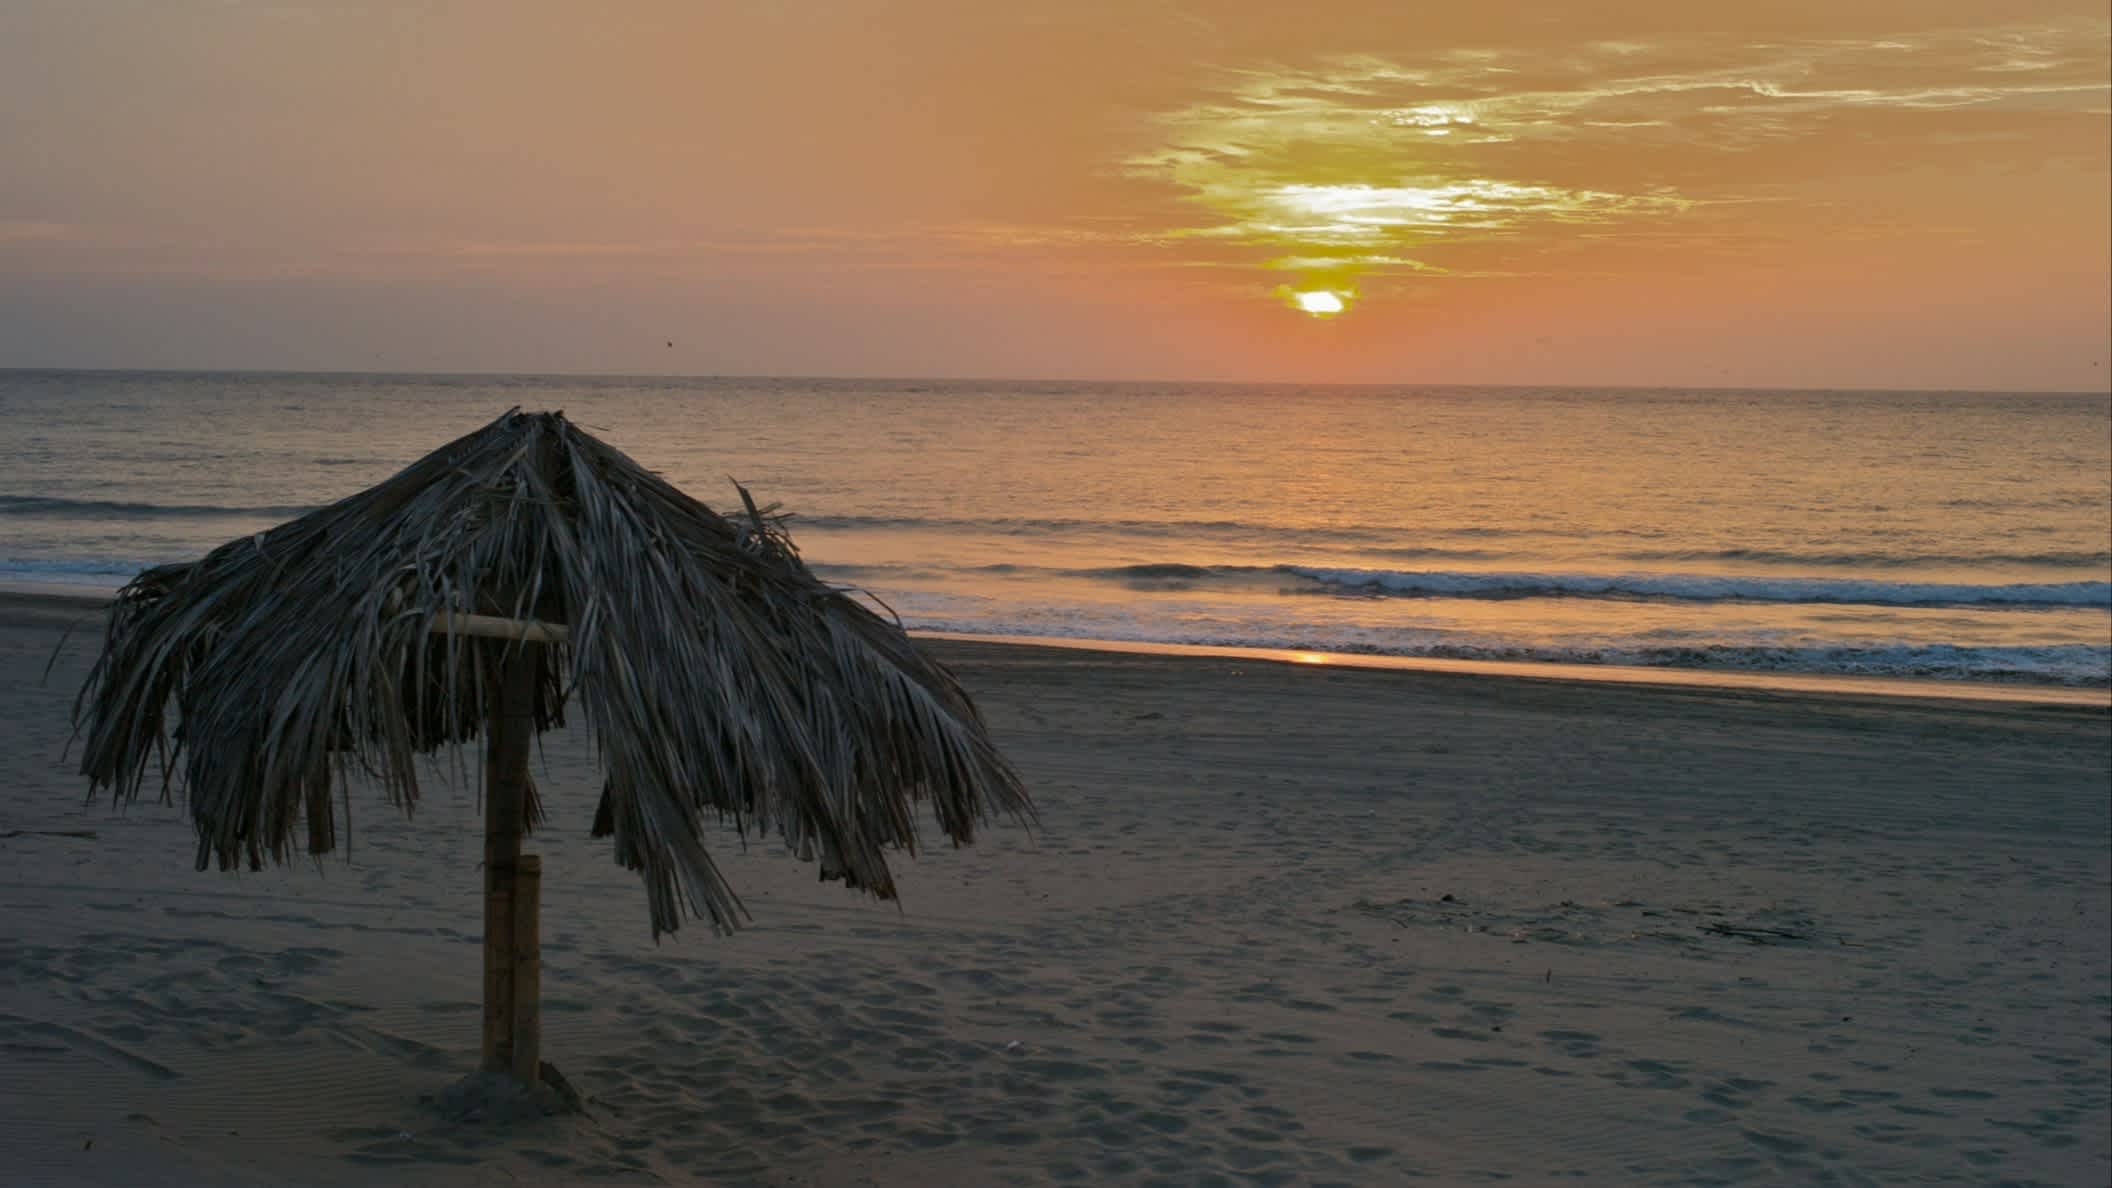 Der Strand von Vichayito in Mancora, Peru bei Sonnendämmerung und einem Strohsonnenhut.